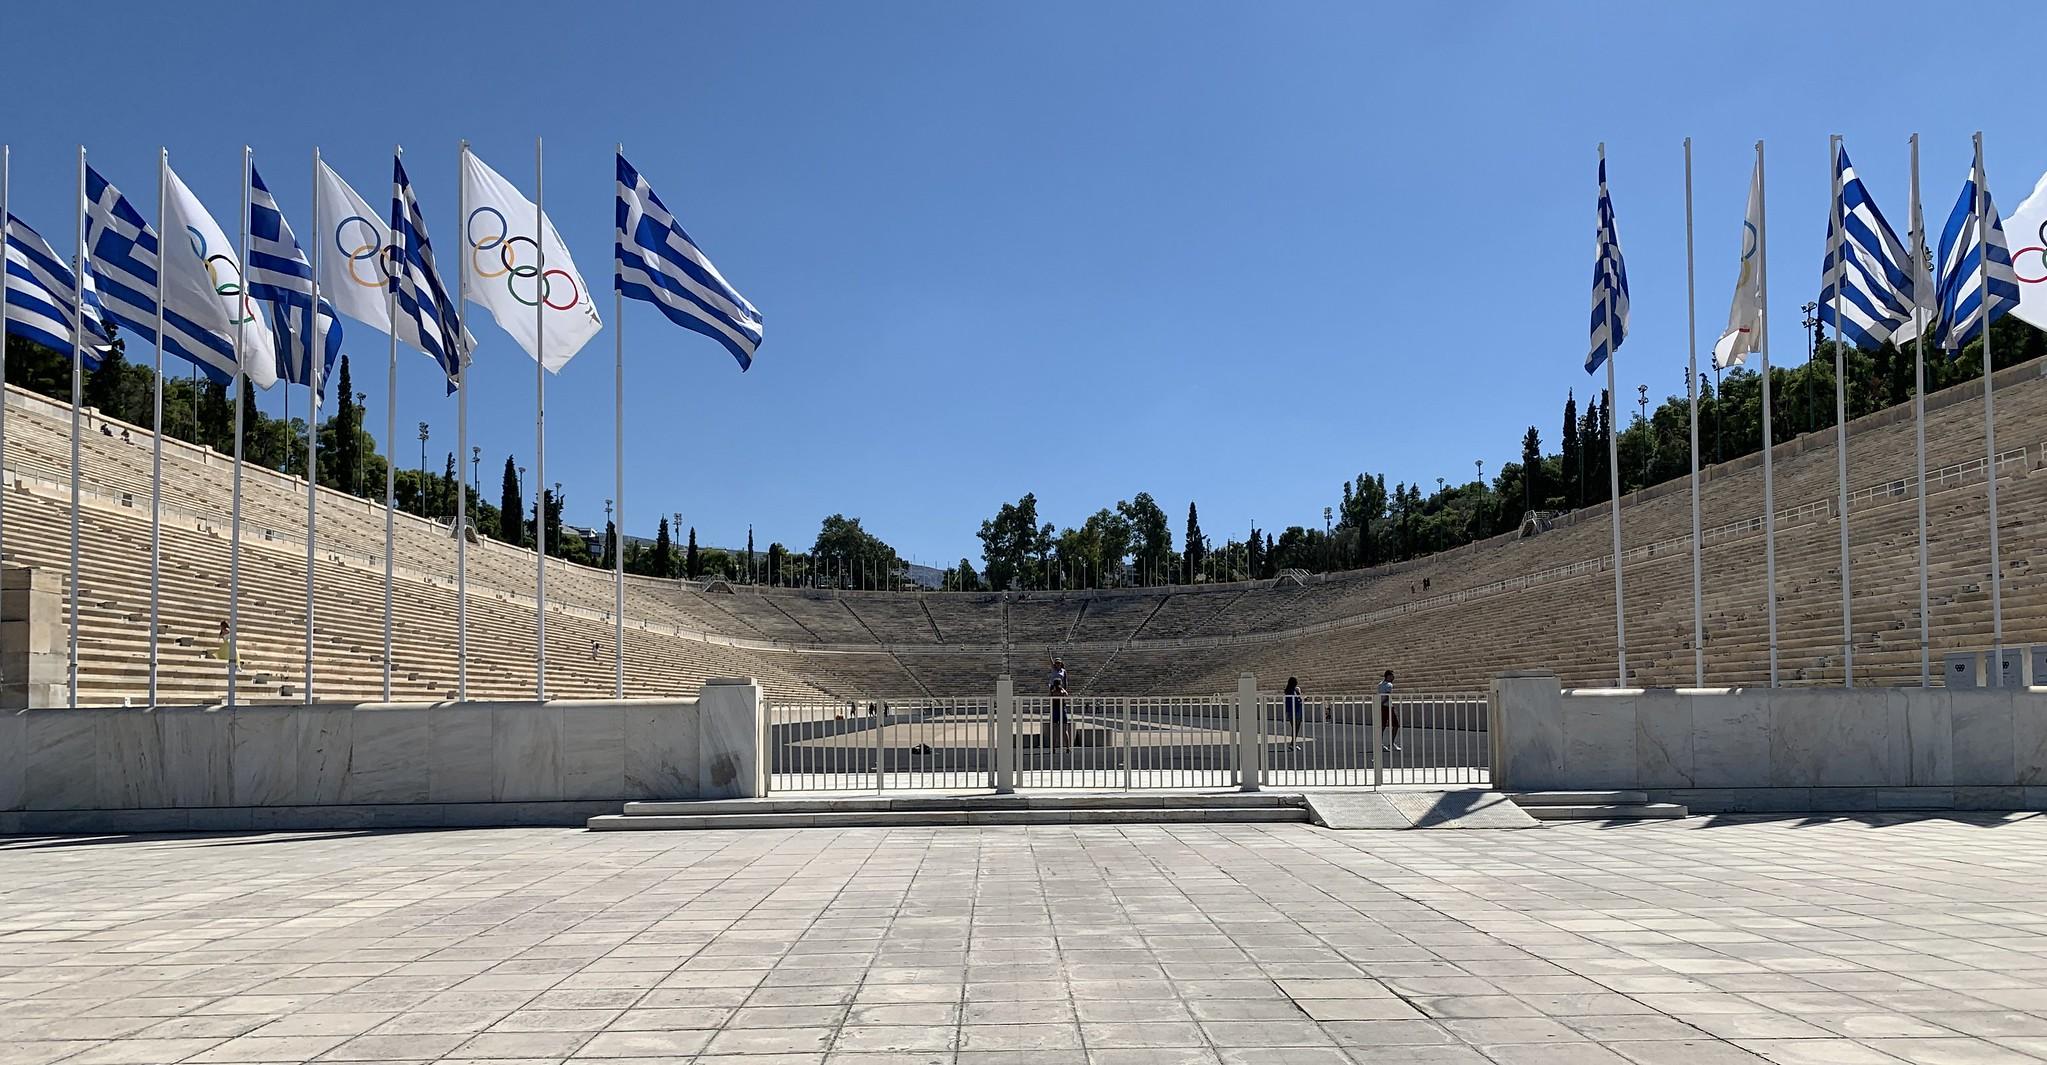 Το Παναθηναϊκό Στάδιο ή αλλιώς καλλιμάρμαρο στην Αθήνα